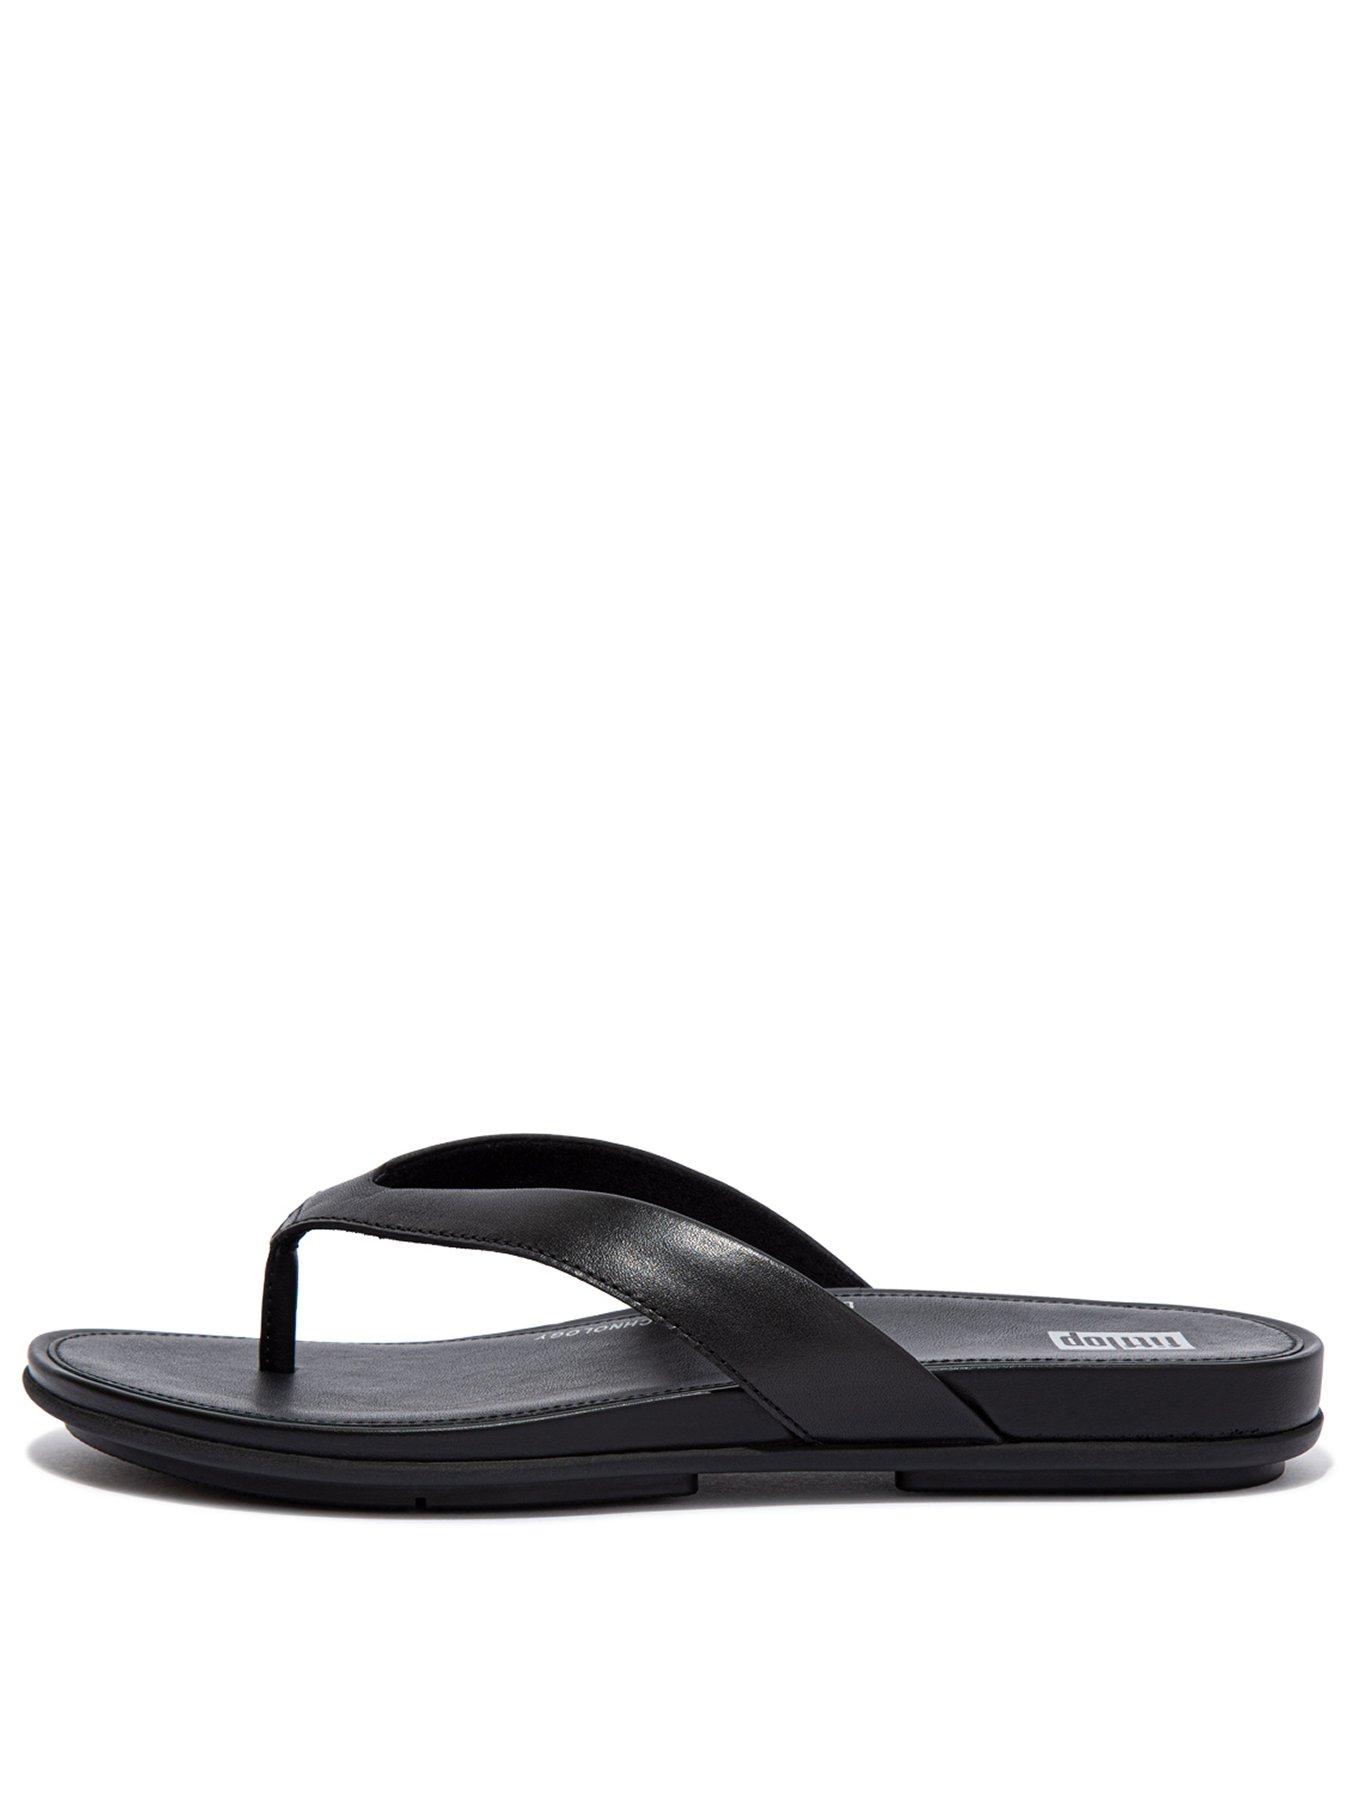 FITFLOP Mens Sandals Slippers Flip flops Casual Ryker Webbing Size UK 9  -RRP £95 | eBay